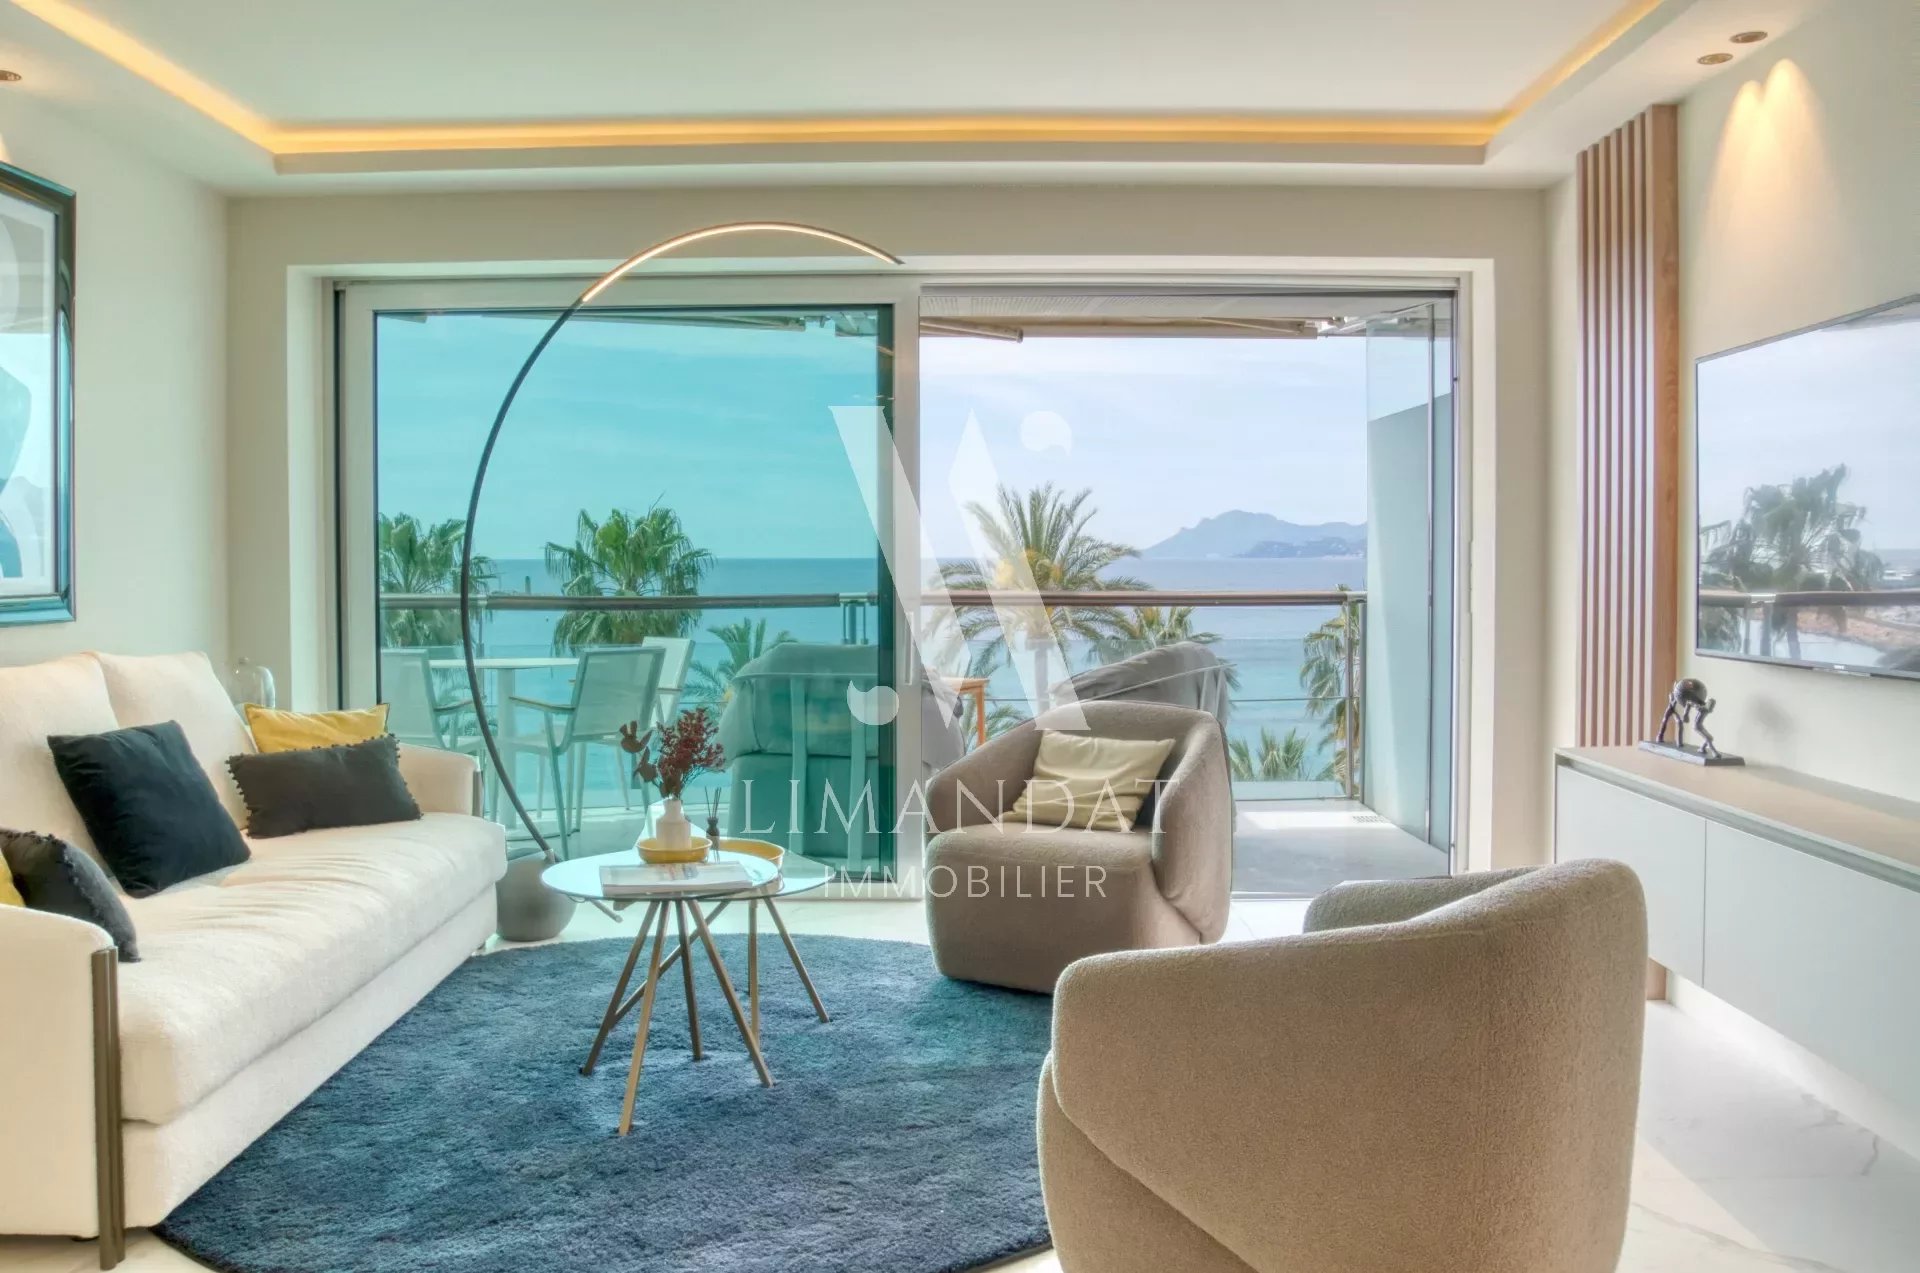 Cannes - Croisette - 3 pièces 90 m2 face à la mer, terrasse 10m2, parking, cave